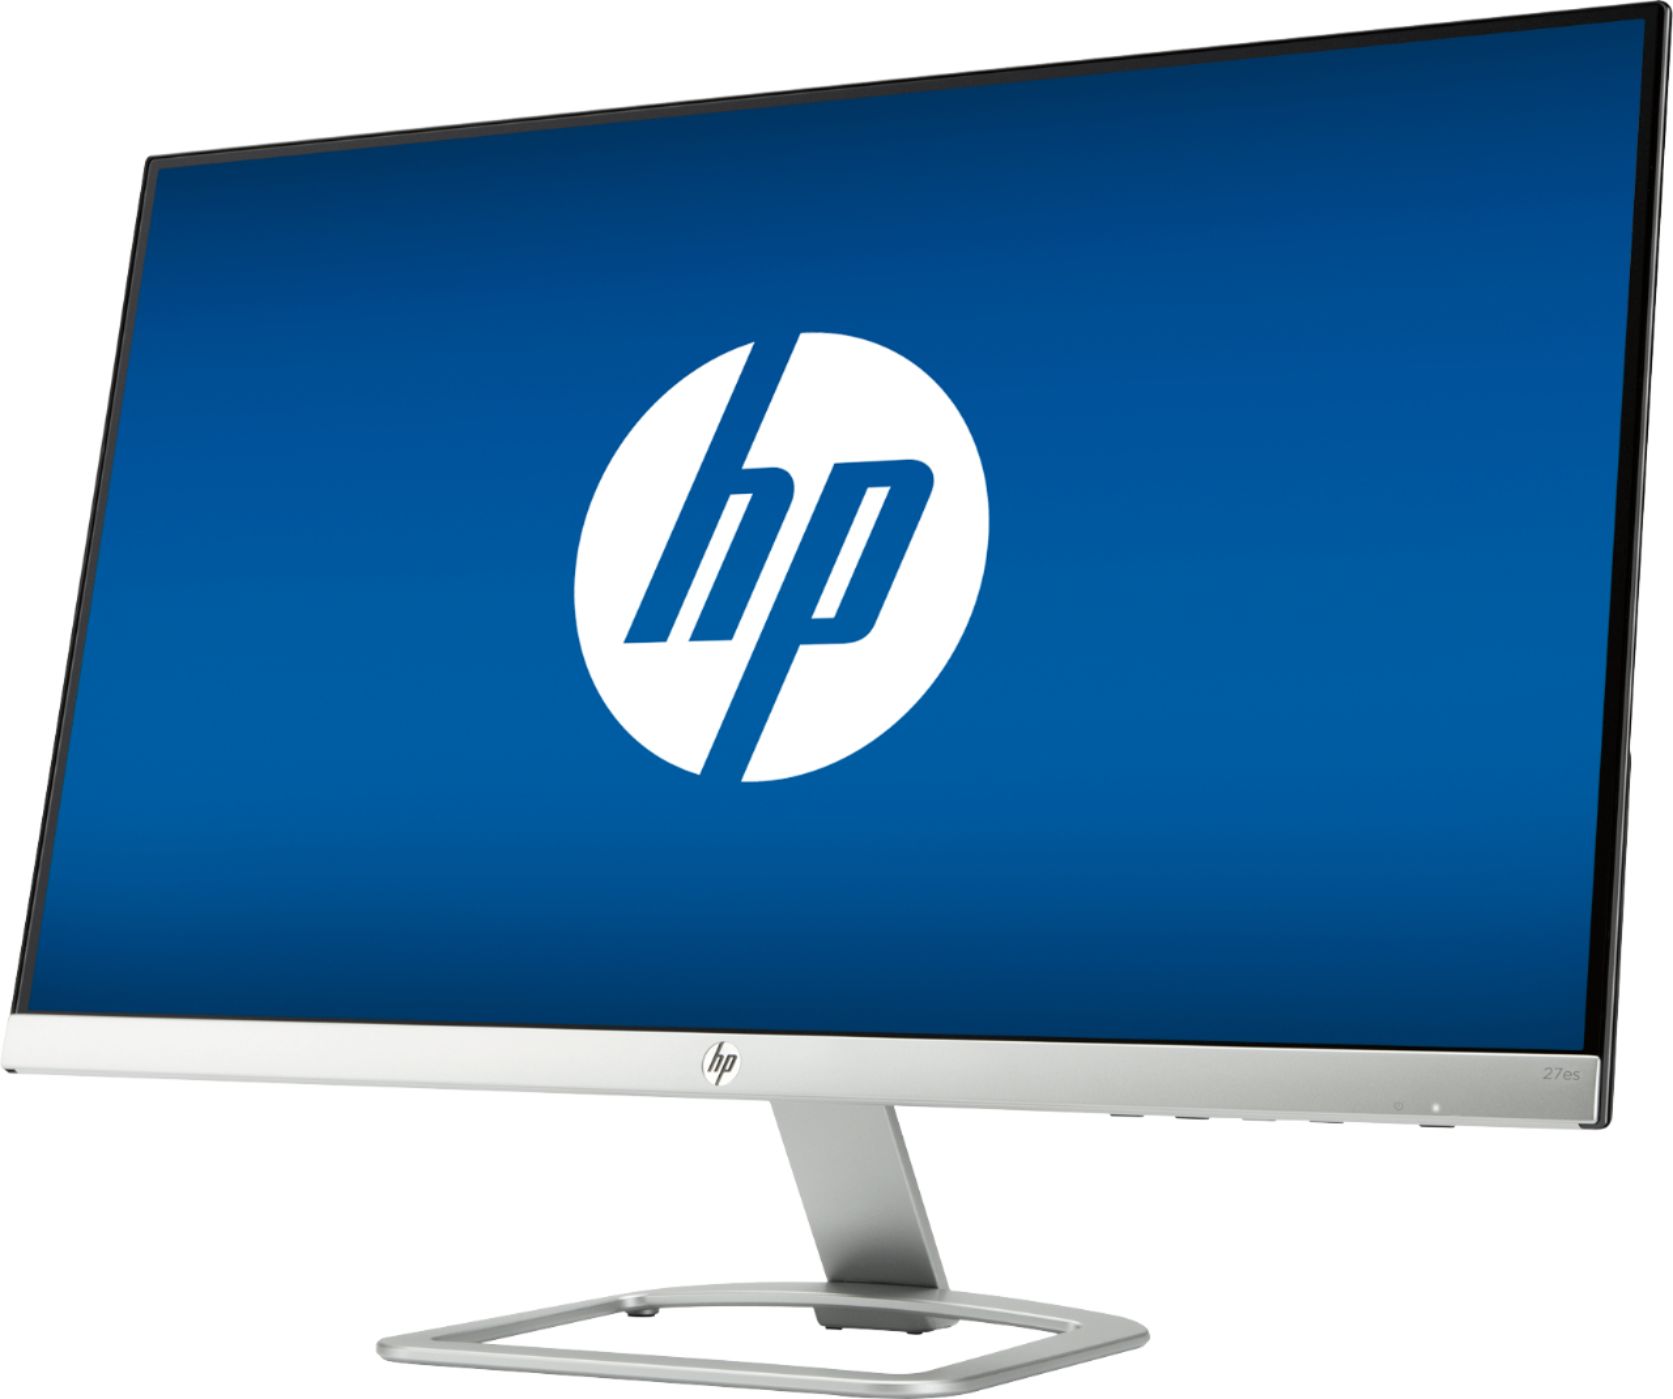 HP 27 LED - 27er - Monitor PC - LDLC